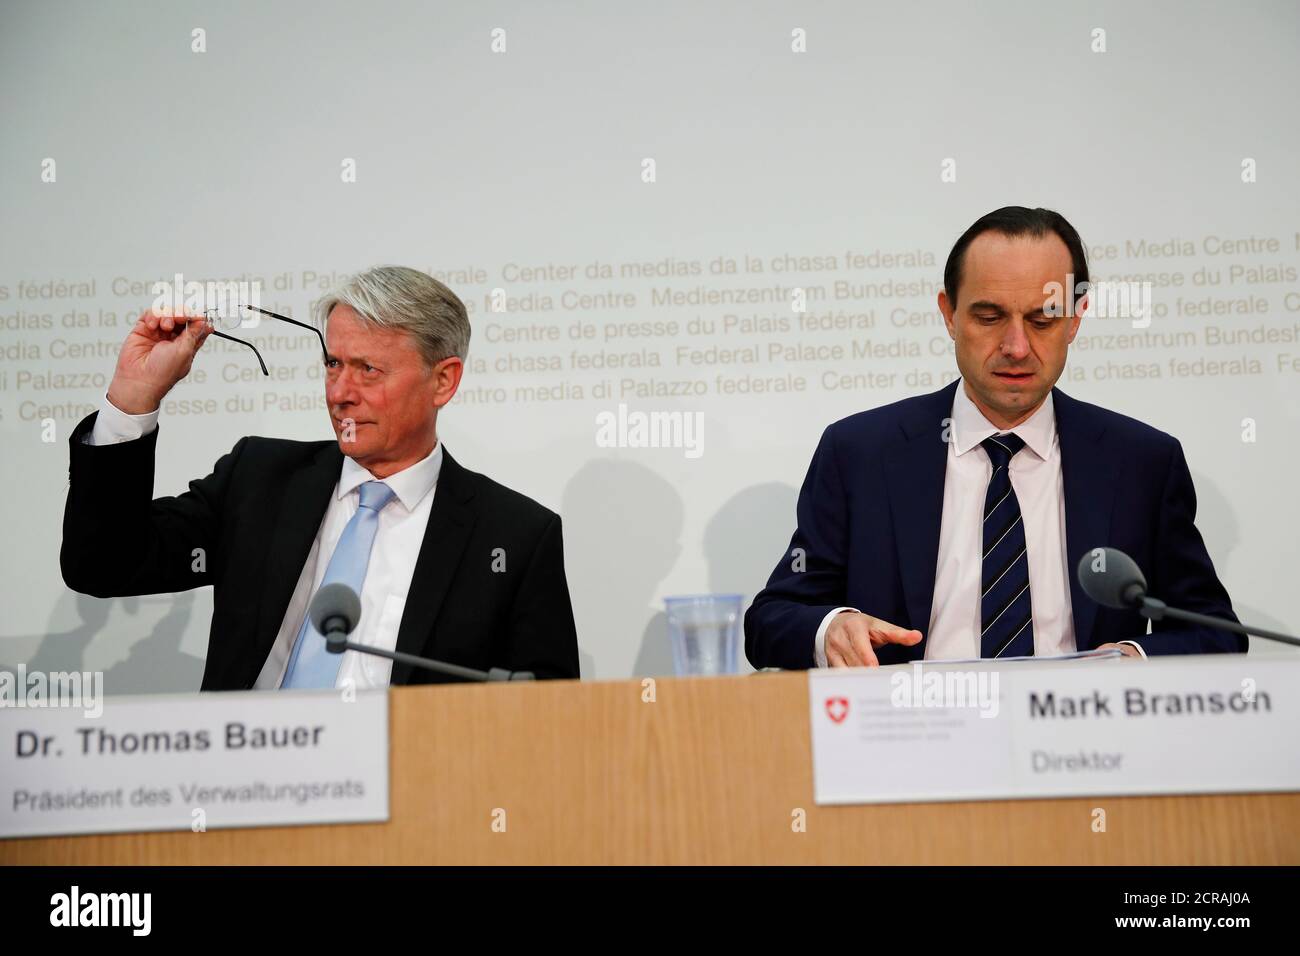 El Director Ejecutivo de la Autoridad Supervisora del mercado Financiero de Suiza (FINMA), Mark Branson, y el Presidente de FINMA, Thomas Bauer, asisten a una conferencia de prensa en Berna, Suiza, el 27 de marzo de 2018. REUTERS/Stefan Wermuth Foto de stock